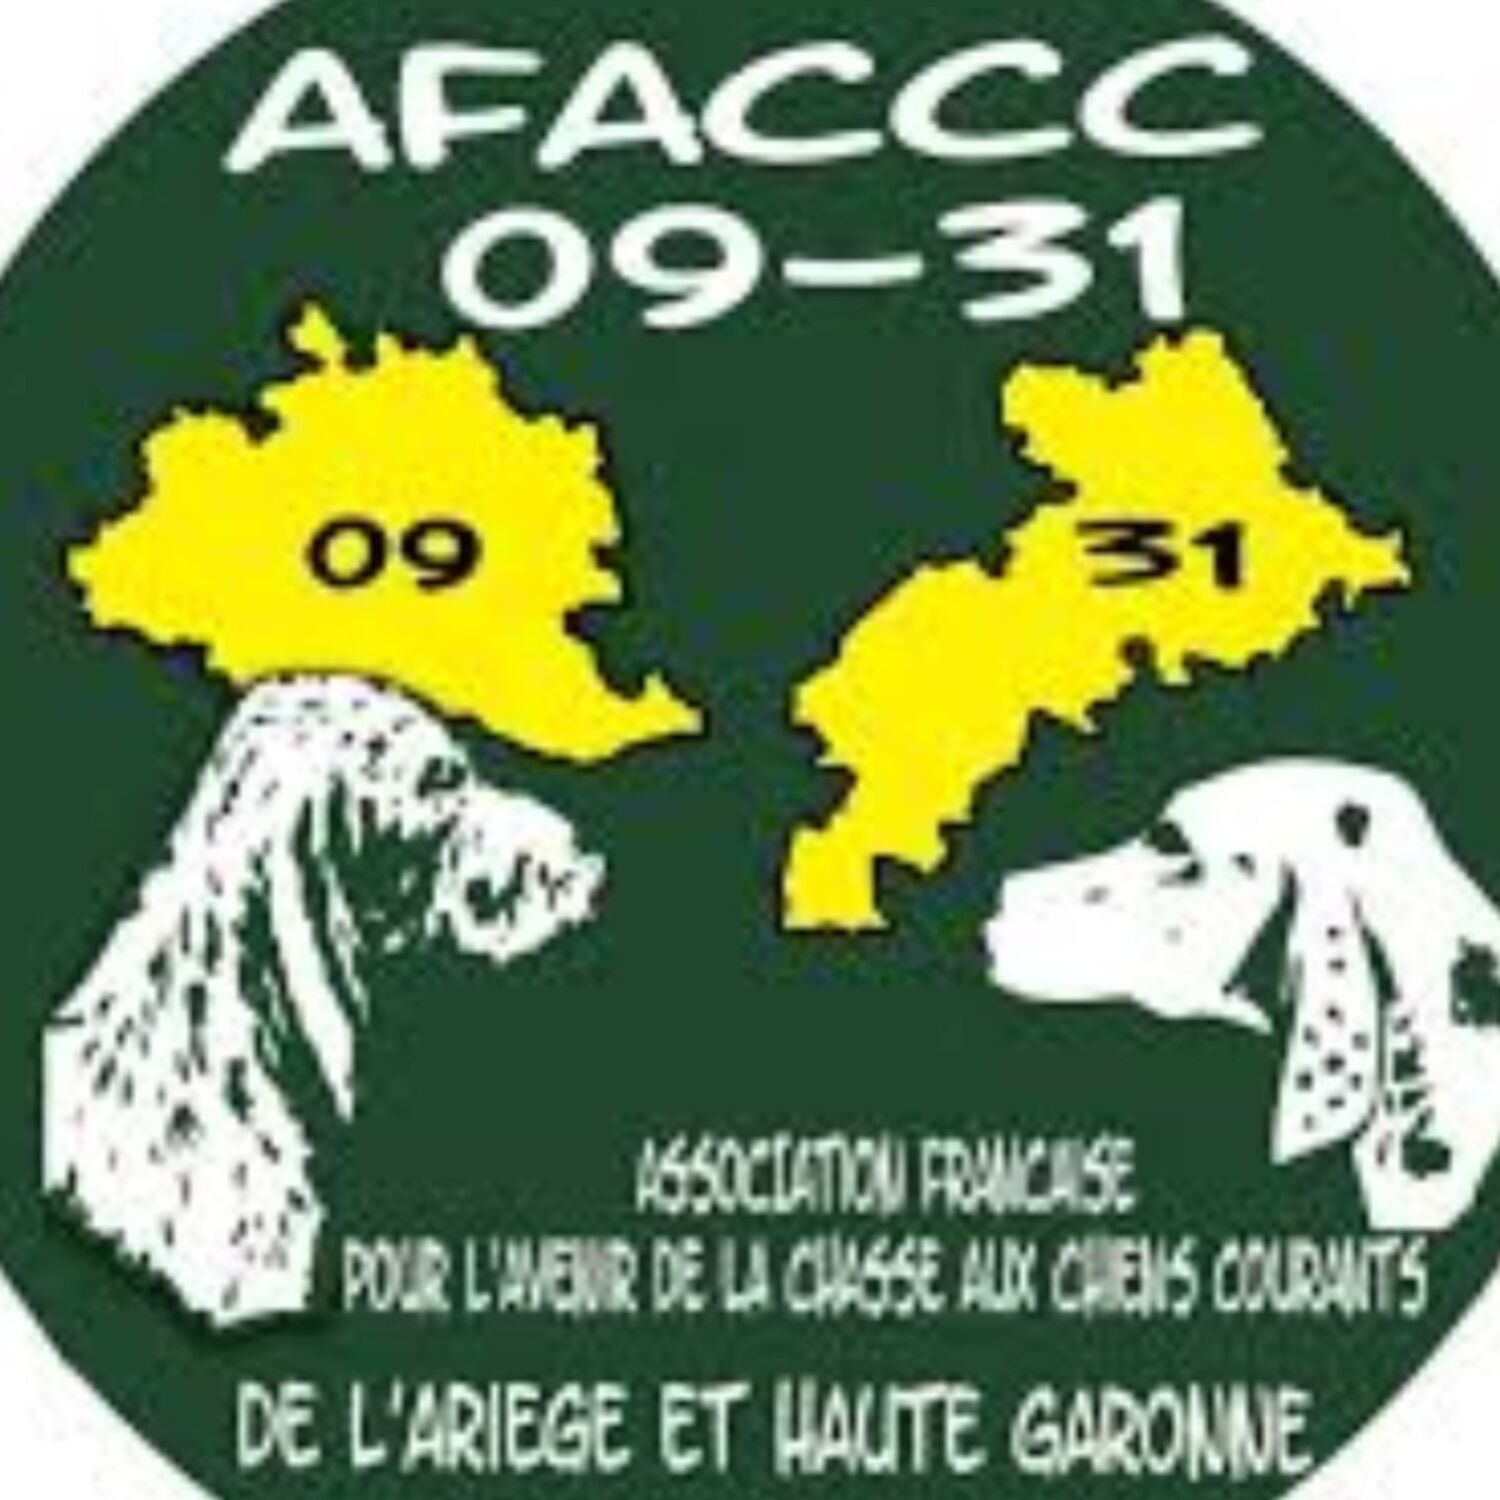 Le journal du 22/02/2023-L'AFACCC partie 2 : Pascal CLAUSTRES